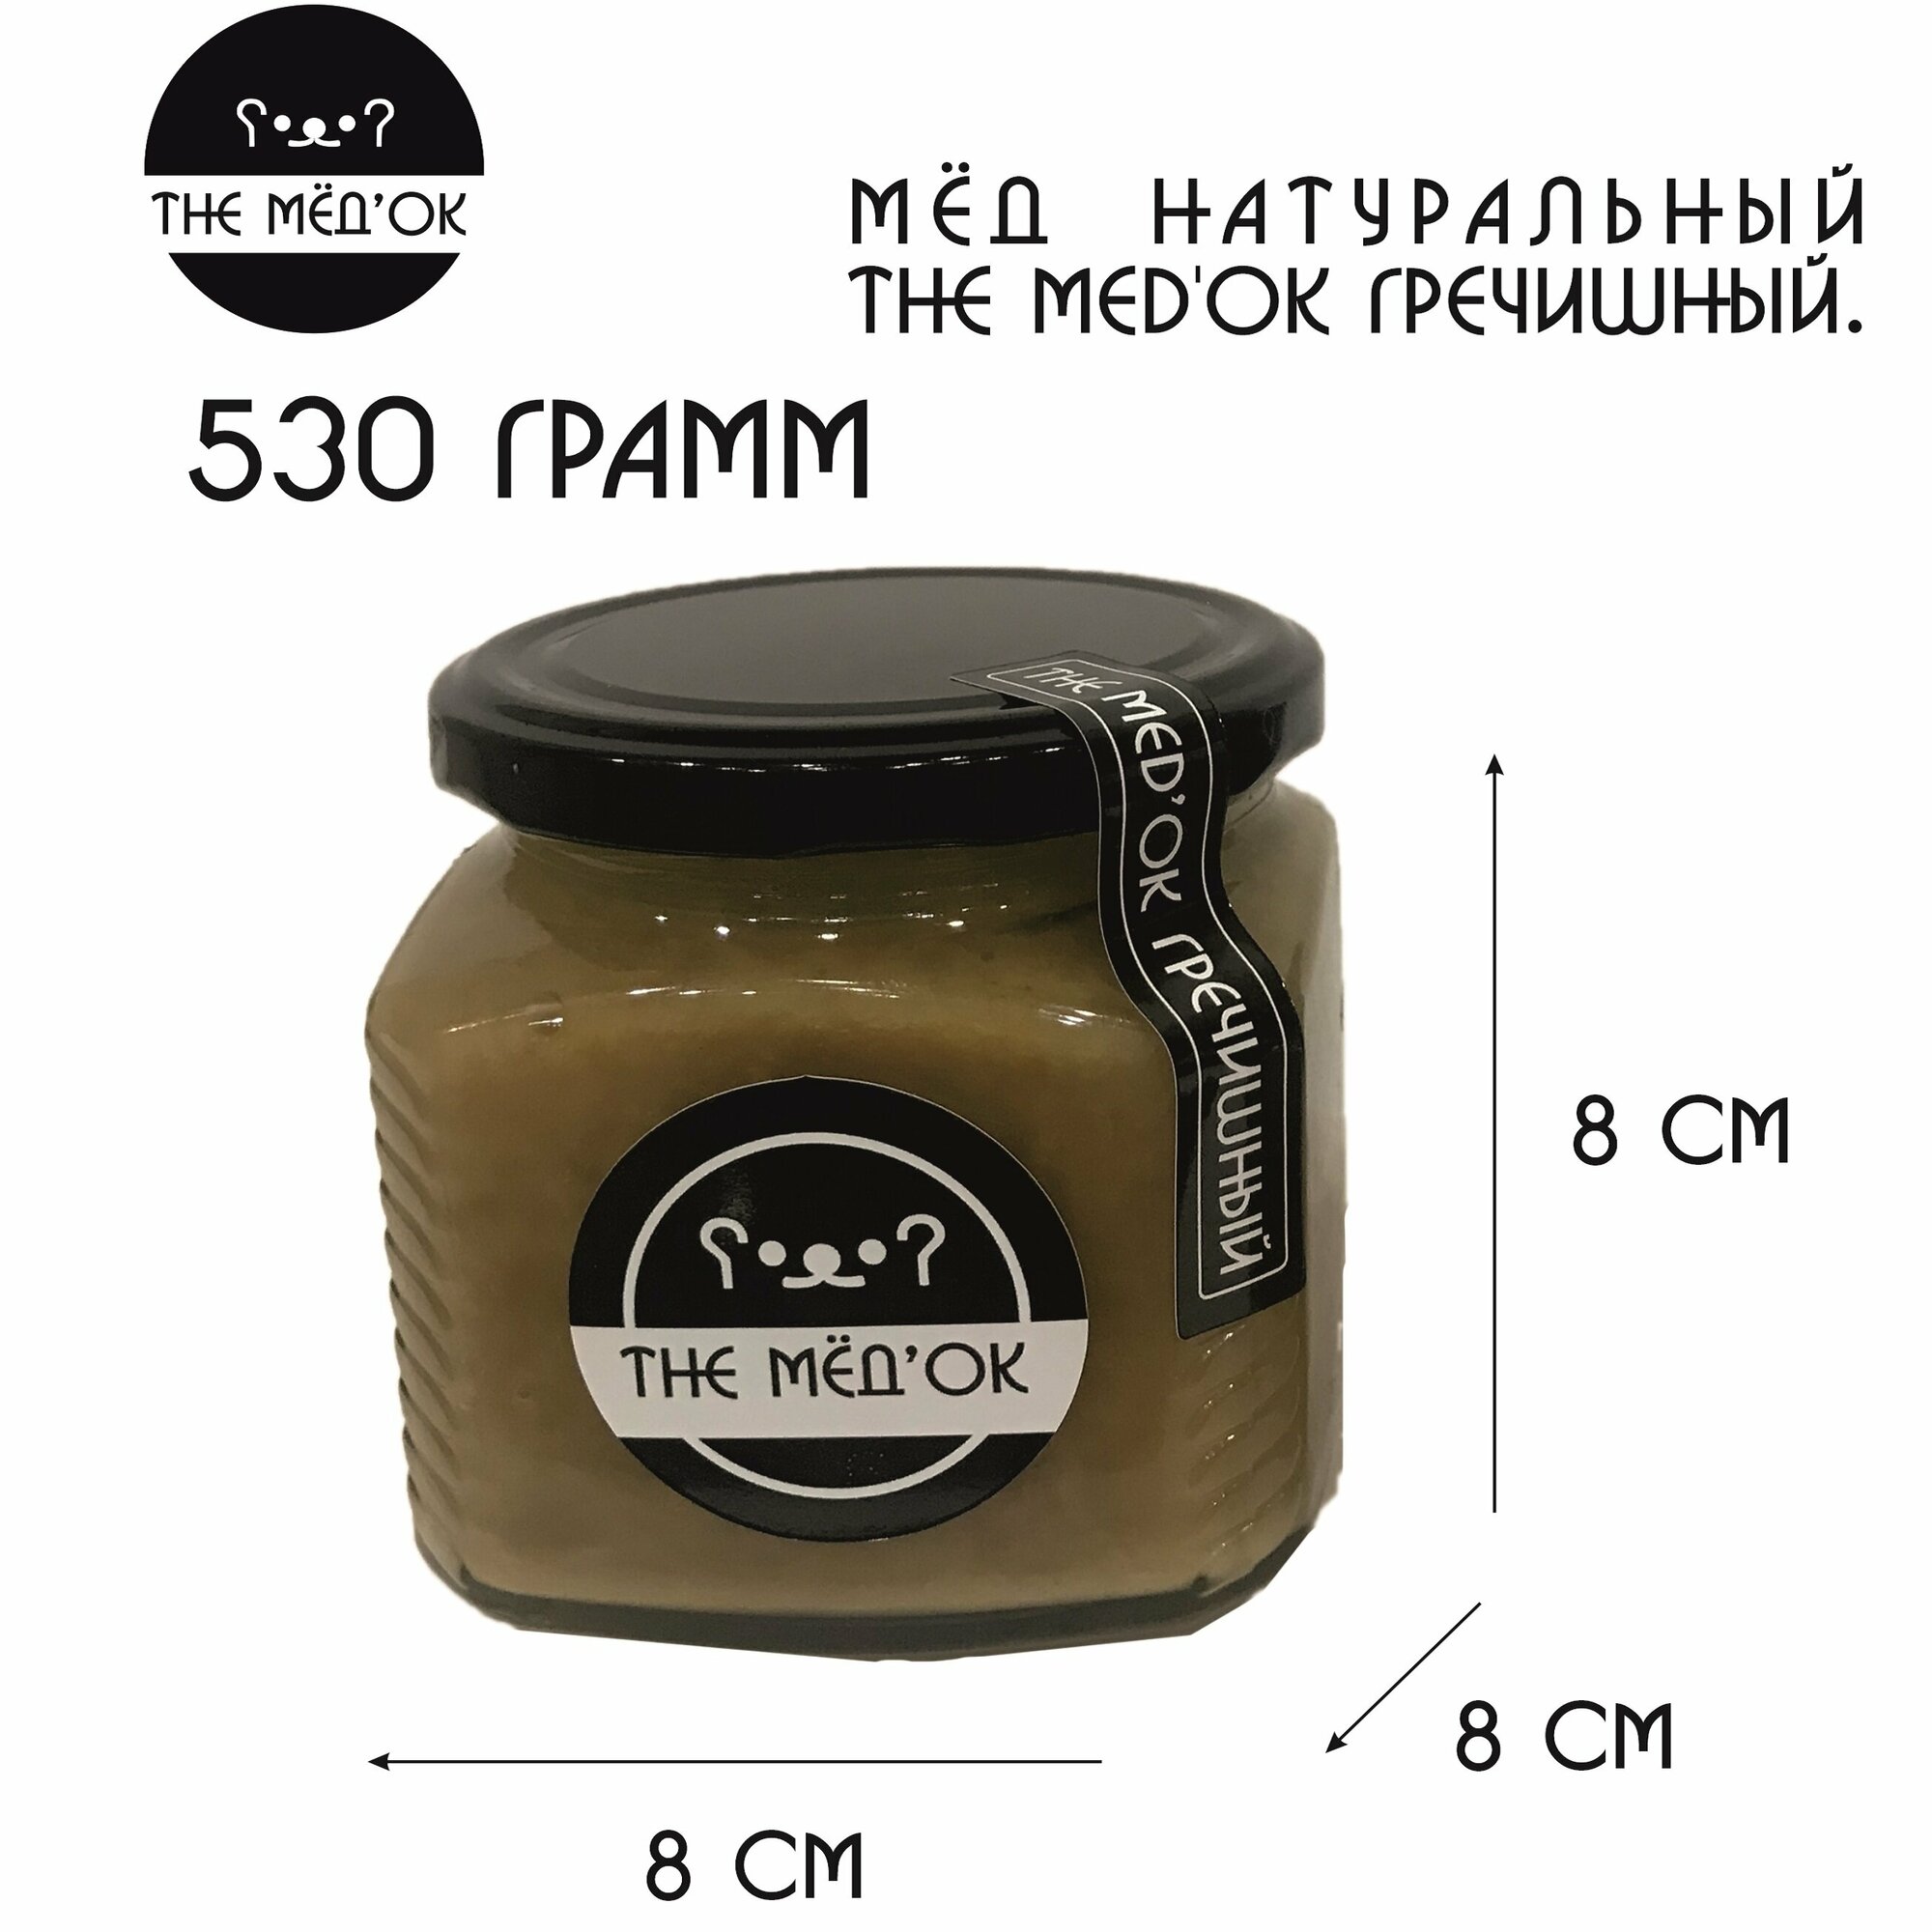 Гречишный Мёд натуральный THE MED'OK гречишный 530 грамм - фотография № 2